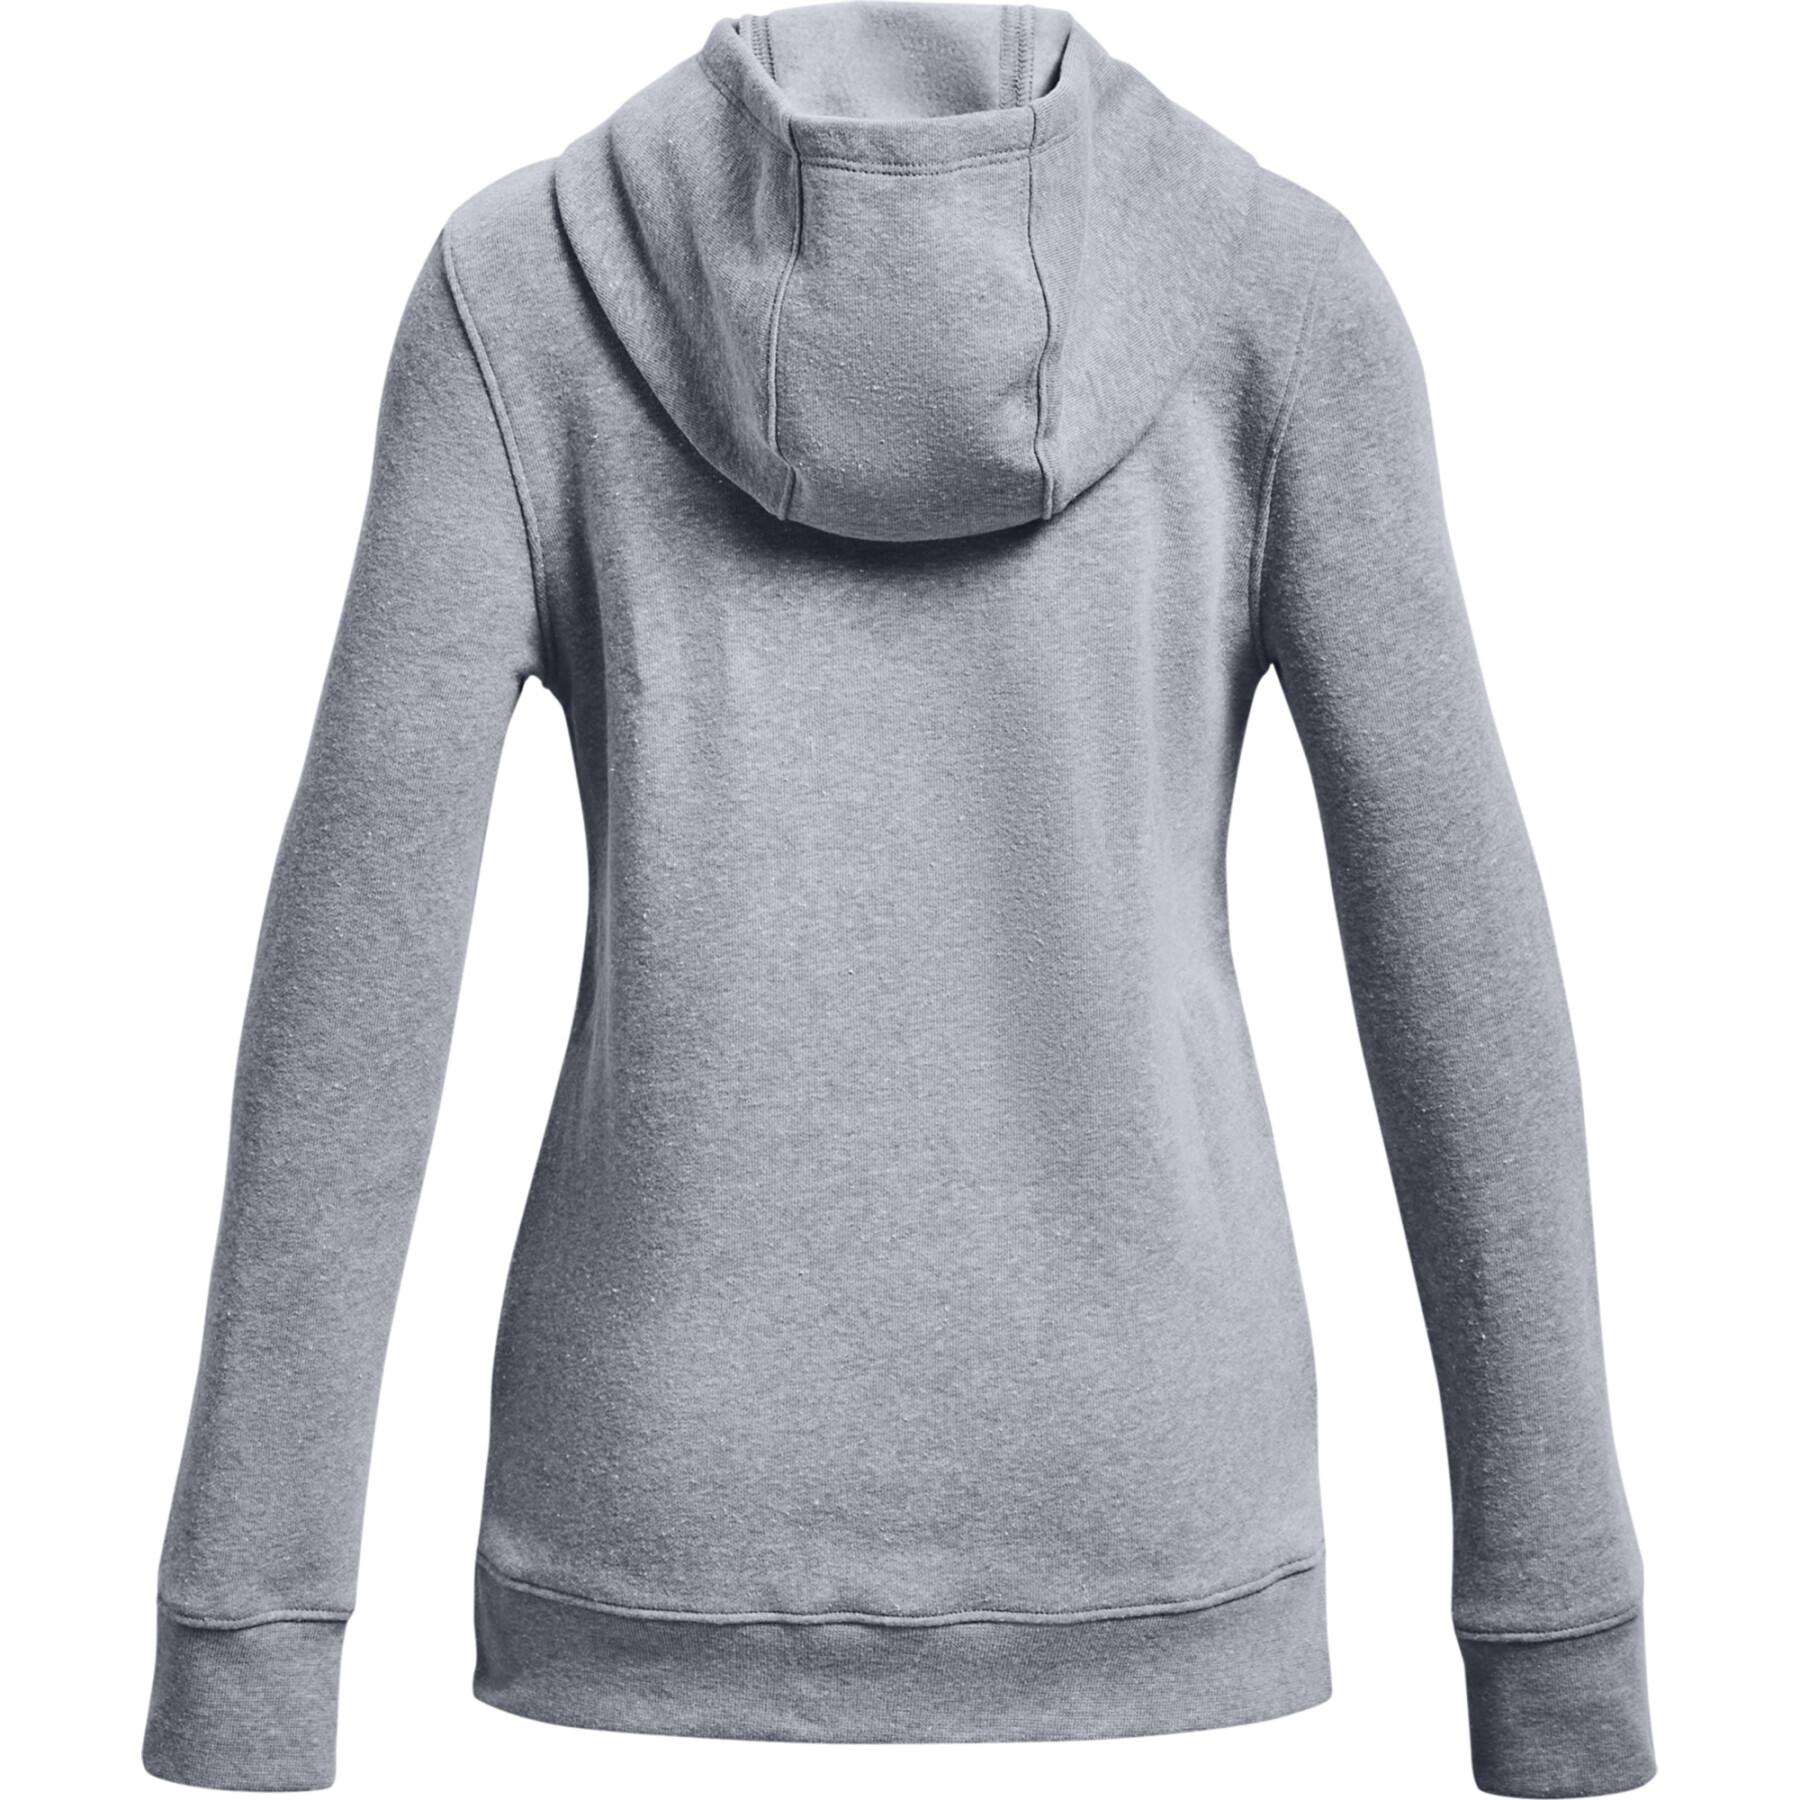 Sweatshirt à capuche fille Under Armour Rival Fleece Logo